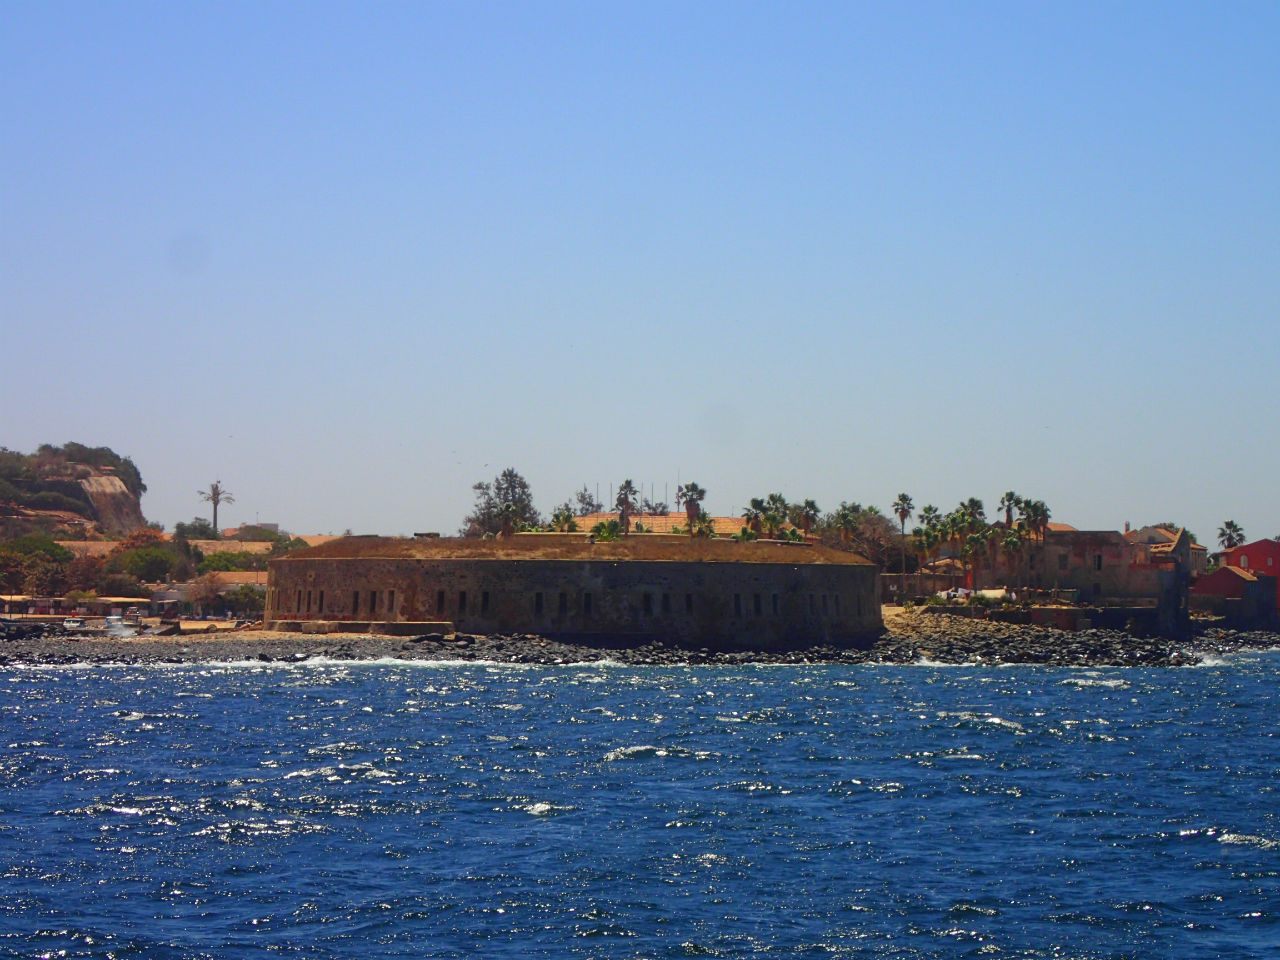 Остров рабов, объект ЮНЕСКО.  Хлебнуть горя на Горе́ Дакар, Сенегал